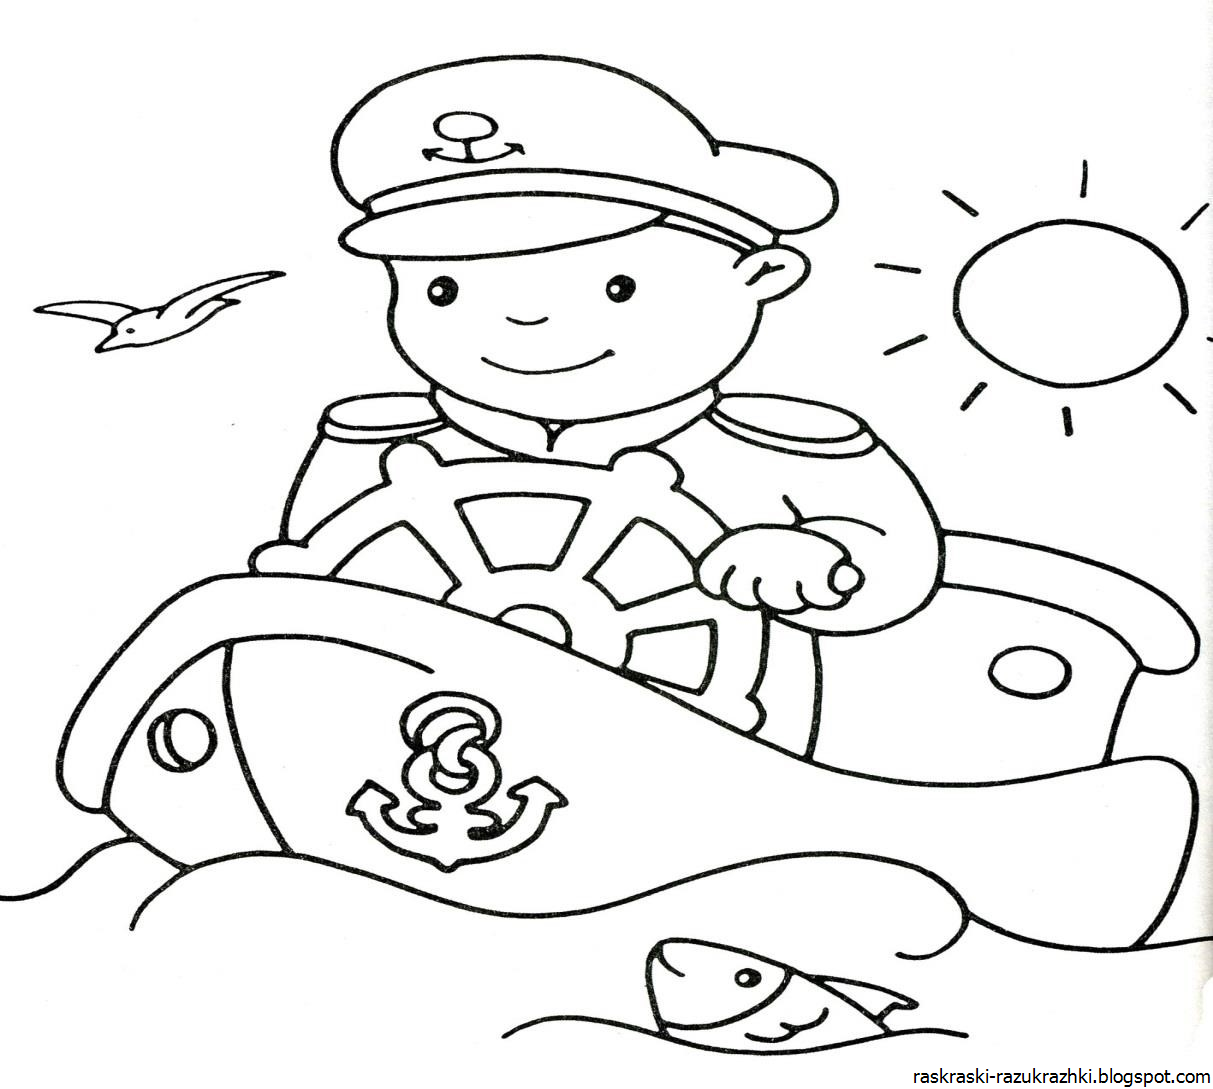 Раскраски 23 февраля 4 года. Военные раскраски для детей. Раскраска 23 февраля для детей. Военный моряк раскраска для детей. Раскраска 23 февраля для малышей.